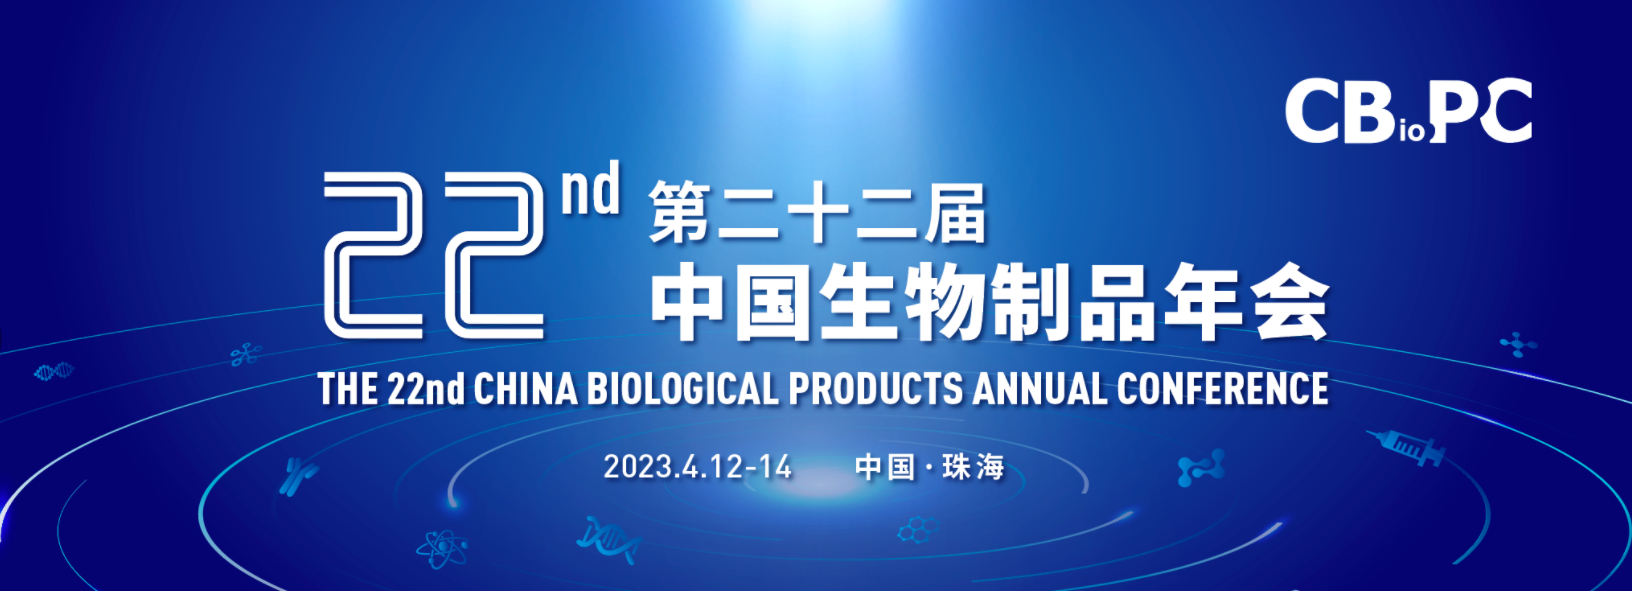 全网最大下注平台邀请您参加CBioPC2022第二十二届生物制品年会